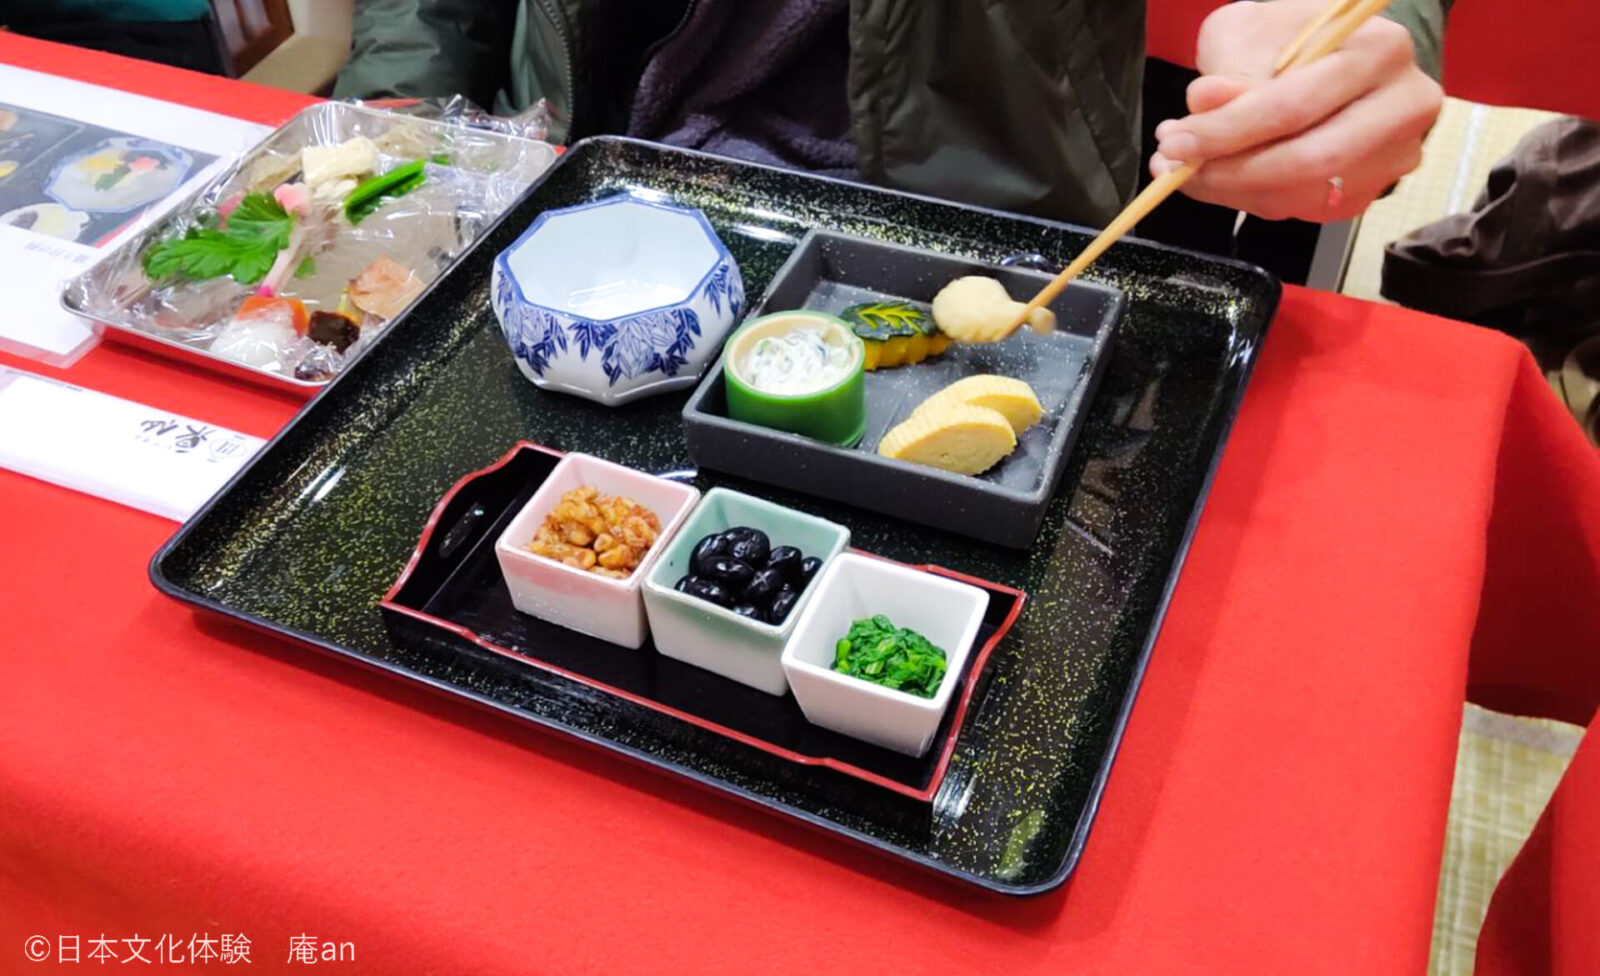 【朝から京都の仕出し文化を体験】京都で味わう老舗仕出し割烹の朝食会席盛り付け体験 画像3